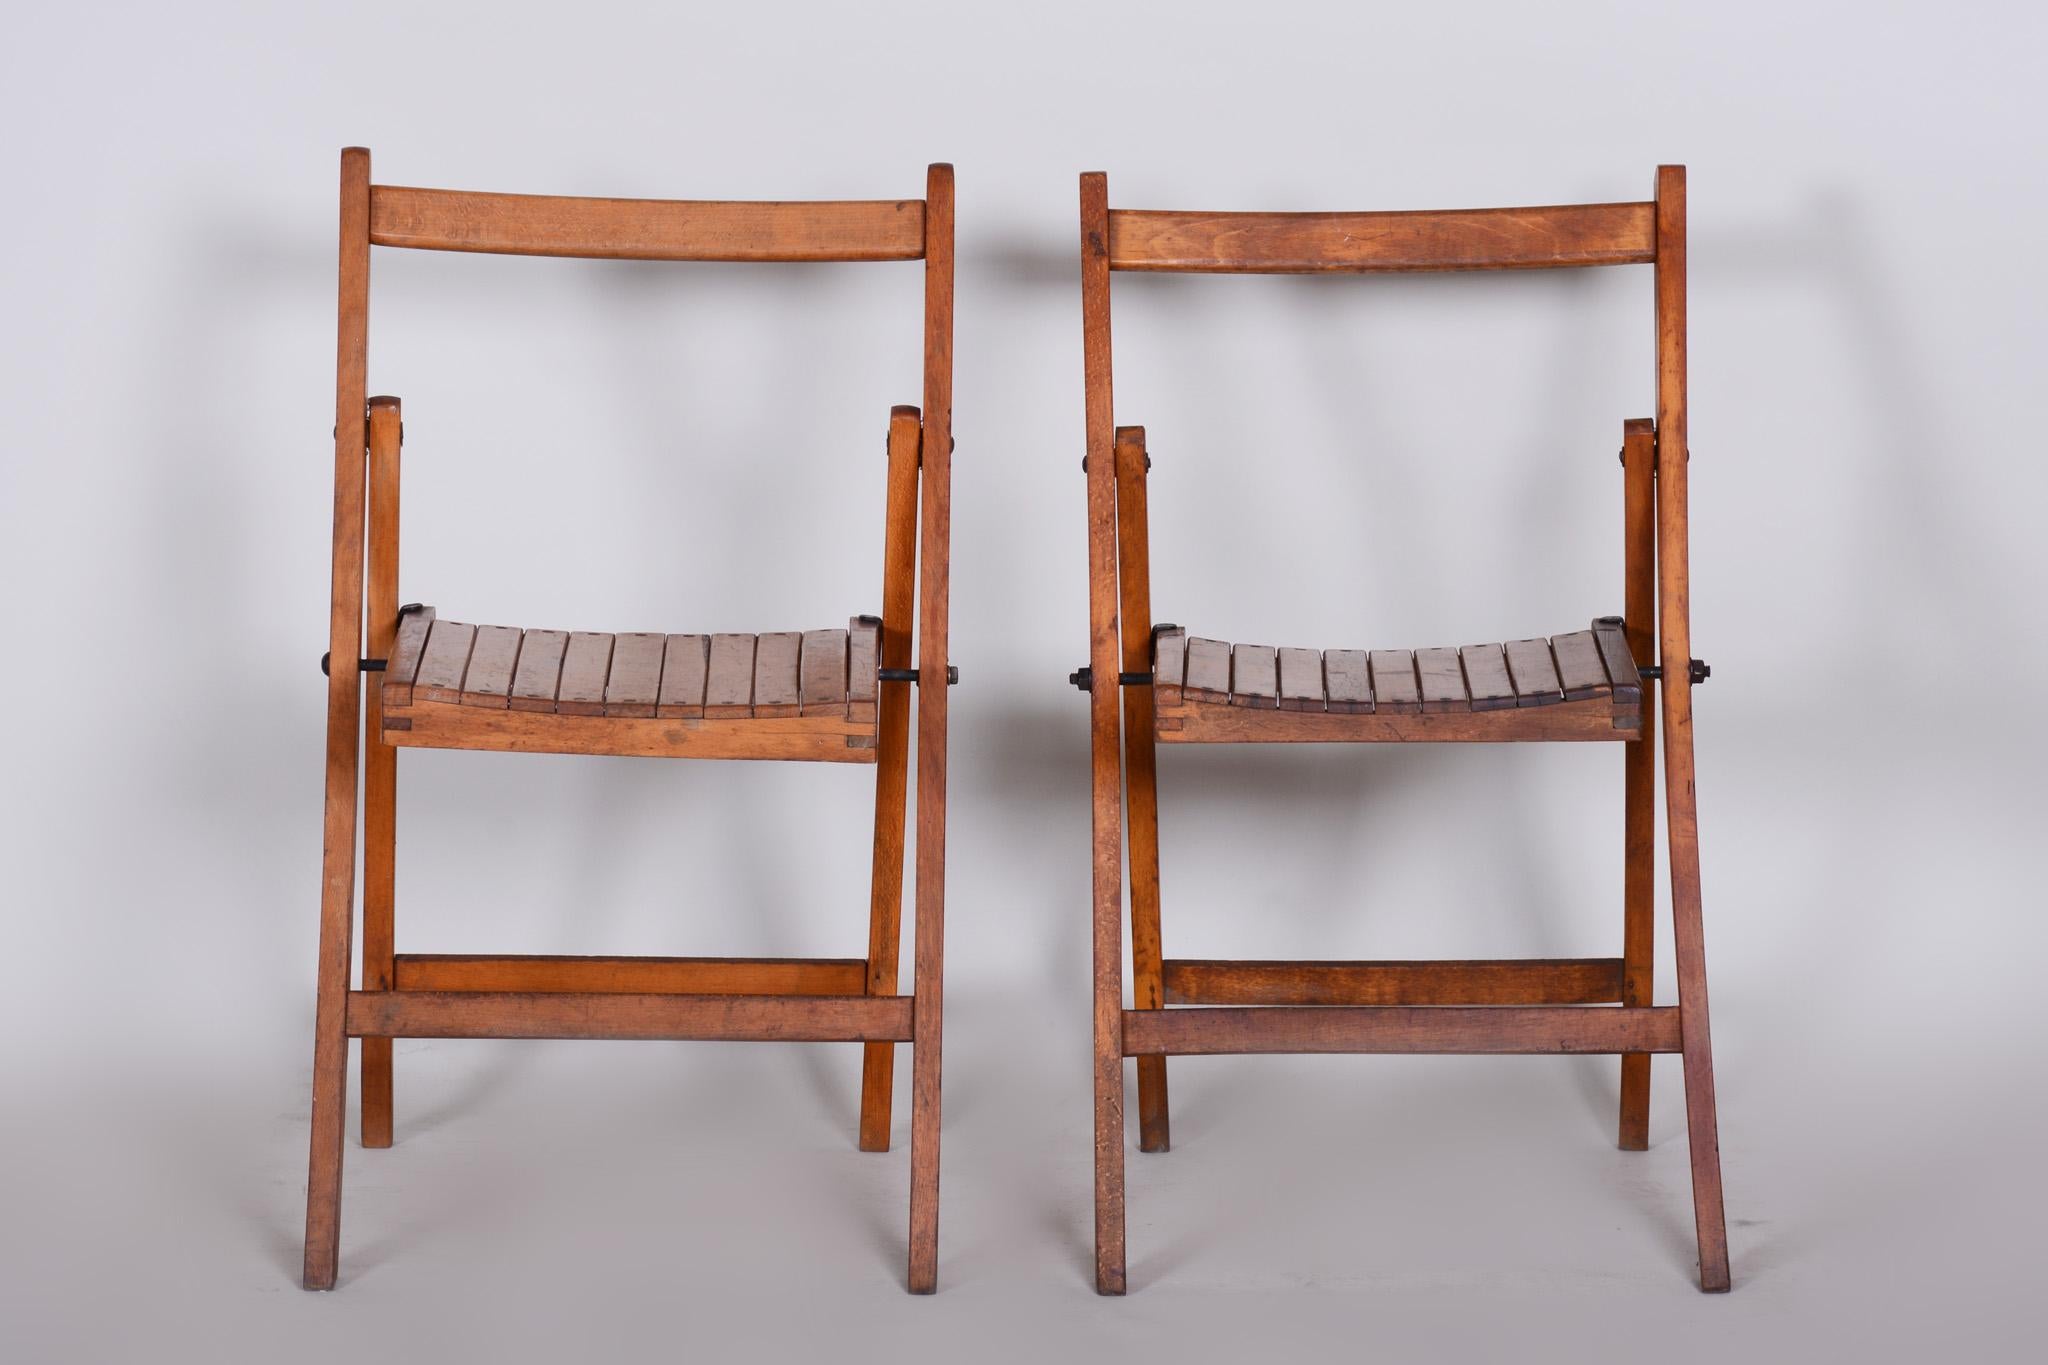 Tschechische Stühle aus der Mitte des Jahrhunderts, 3 Stück.
Material: Buche
Zeitraum: 1950-1959
Original erhaltener Zustand.